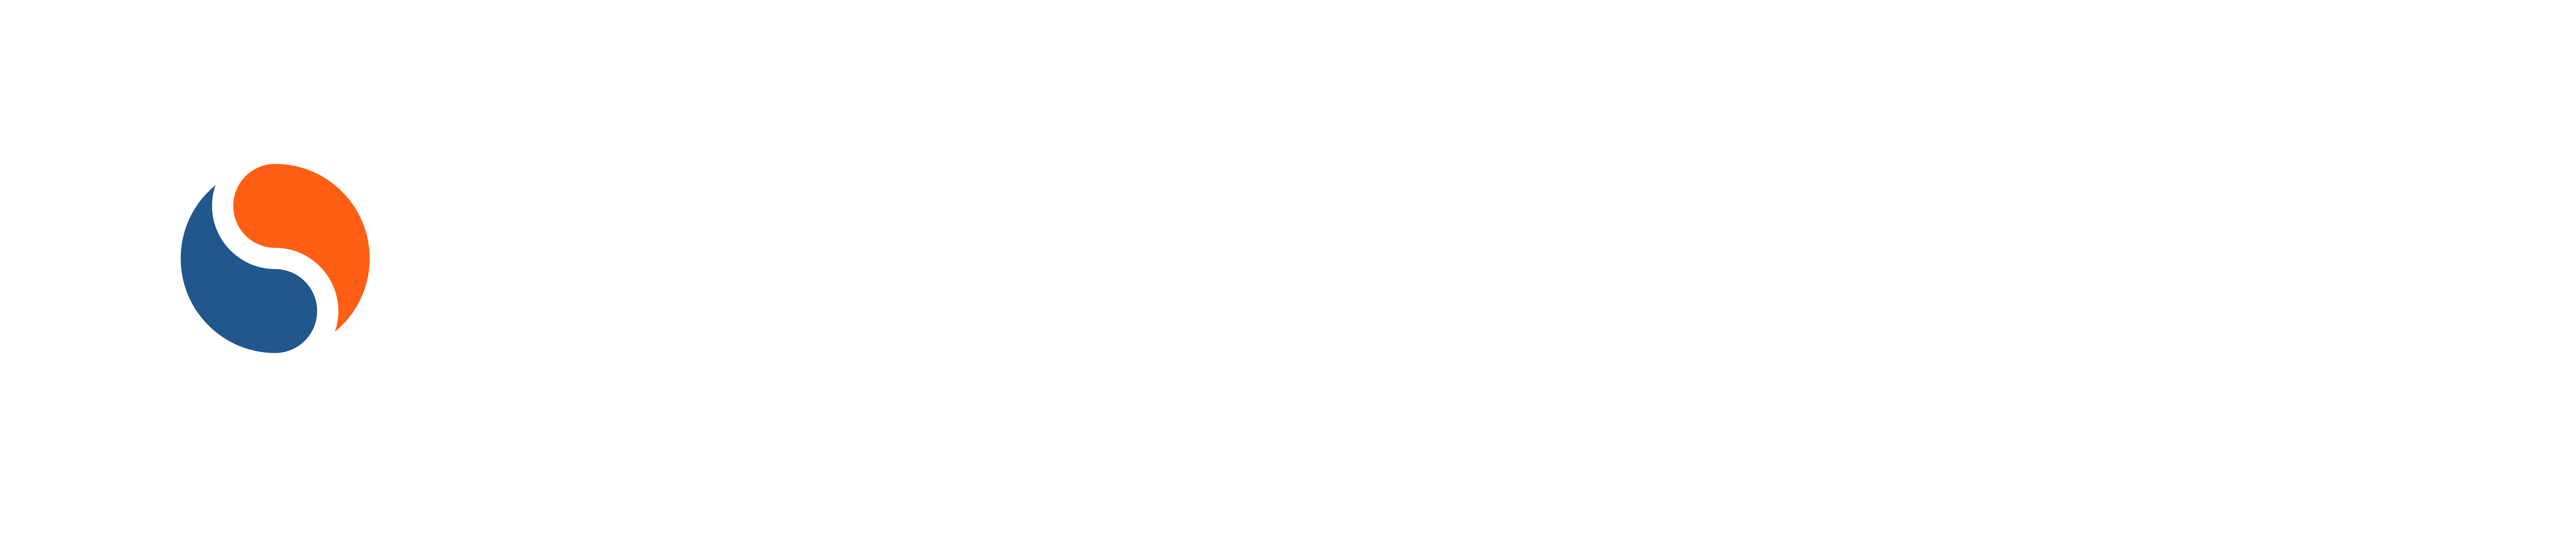 concord security logo